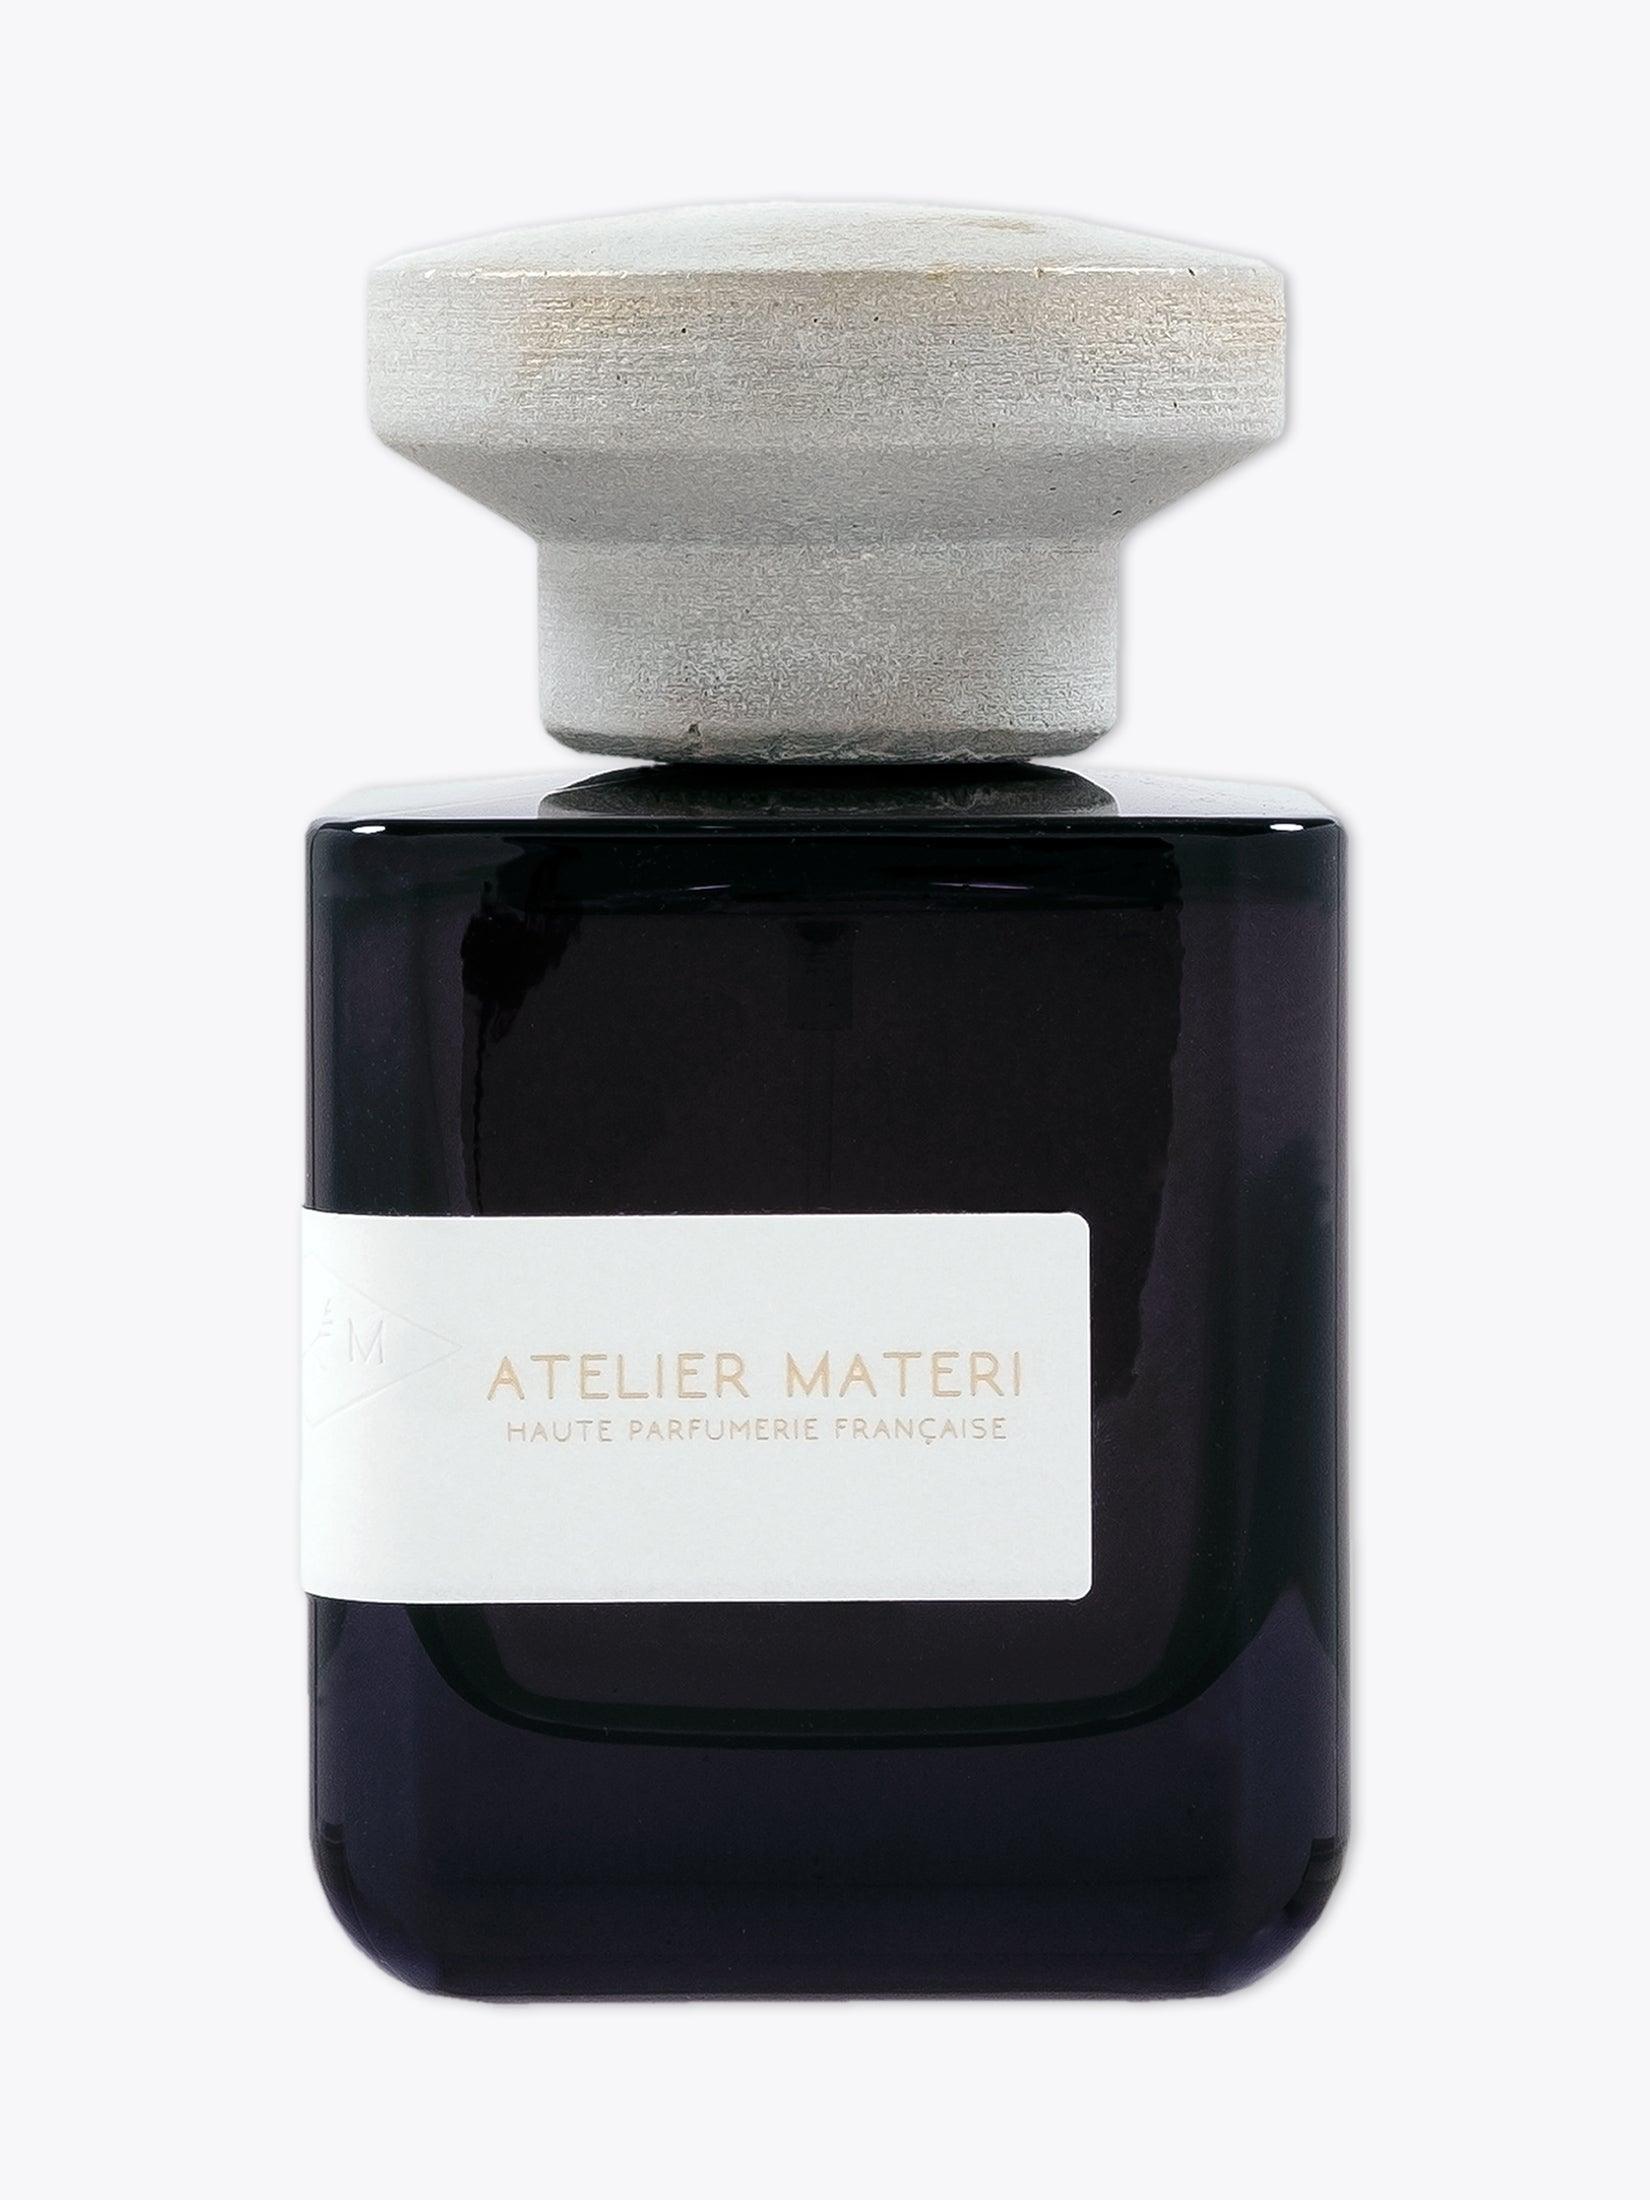 ATELIER MATERI Bois d'Ambrette Eau de Parfum 100 ml